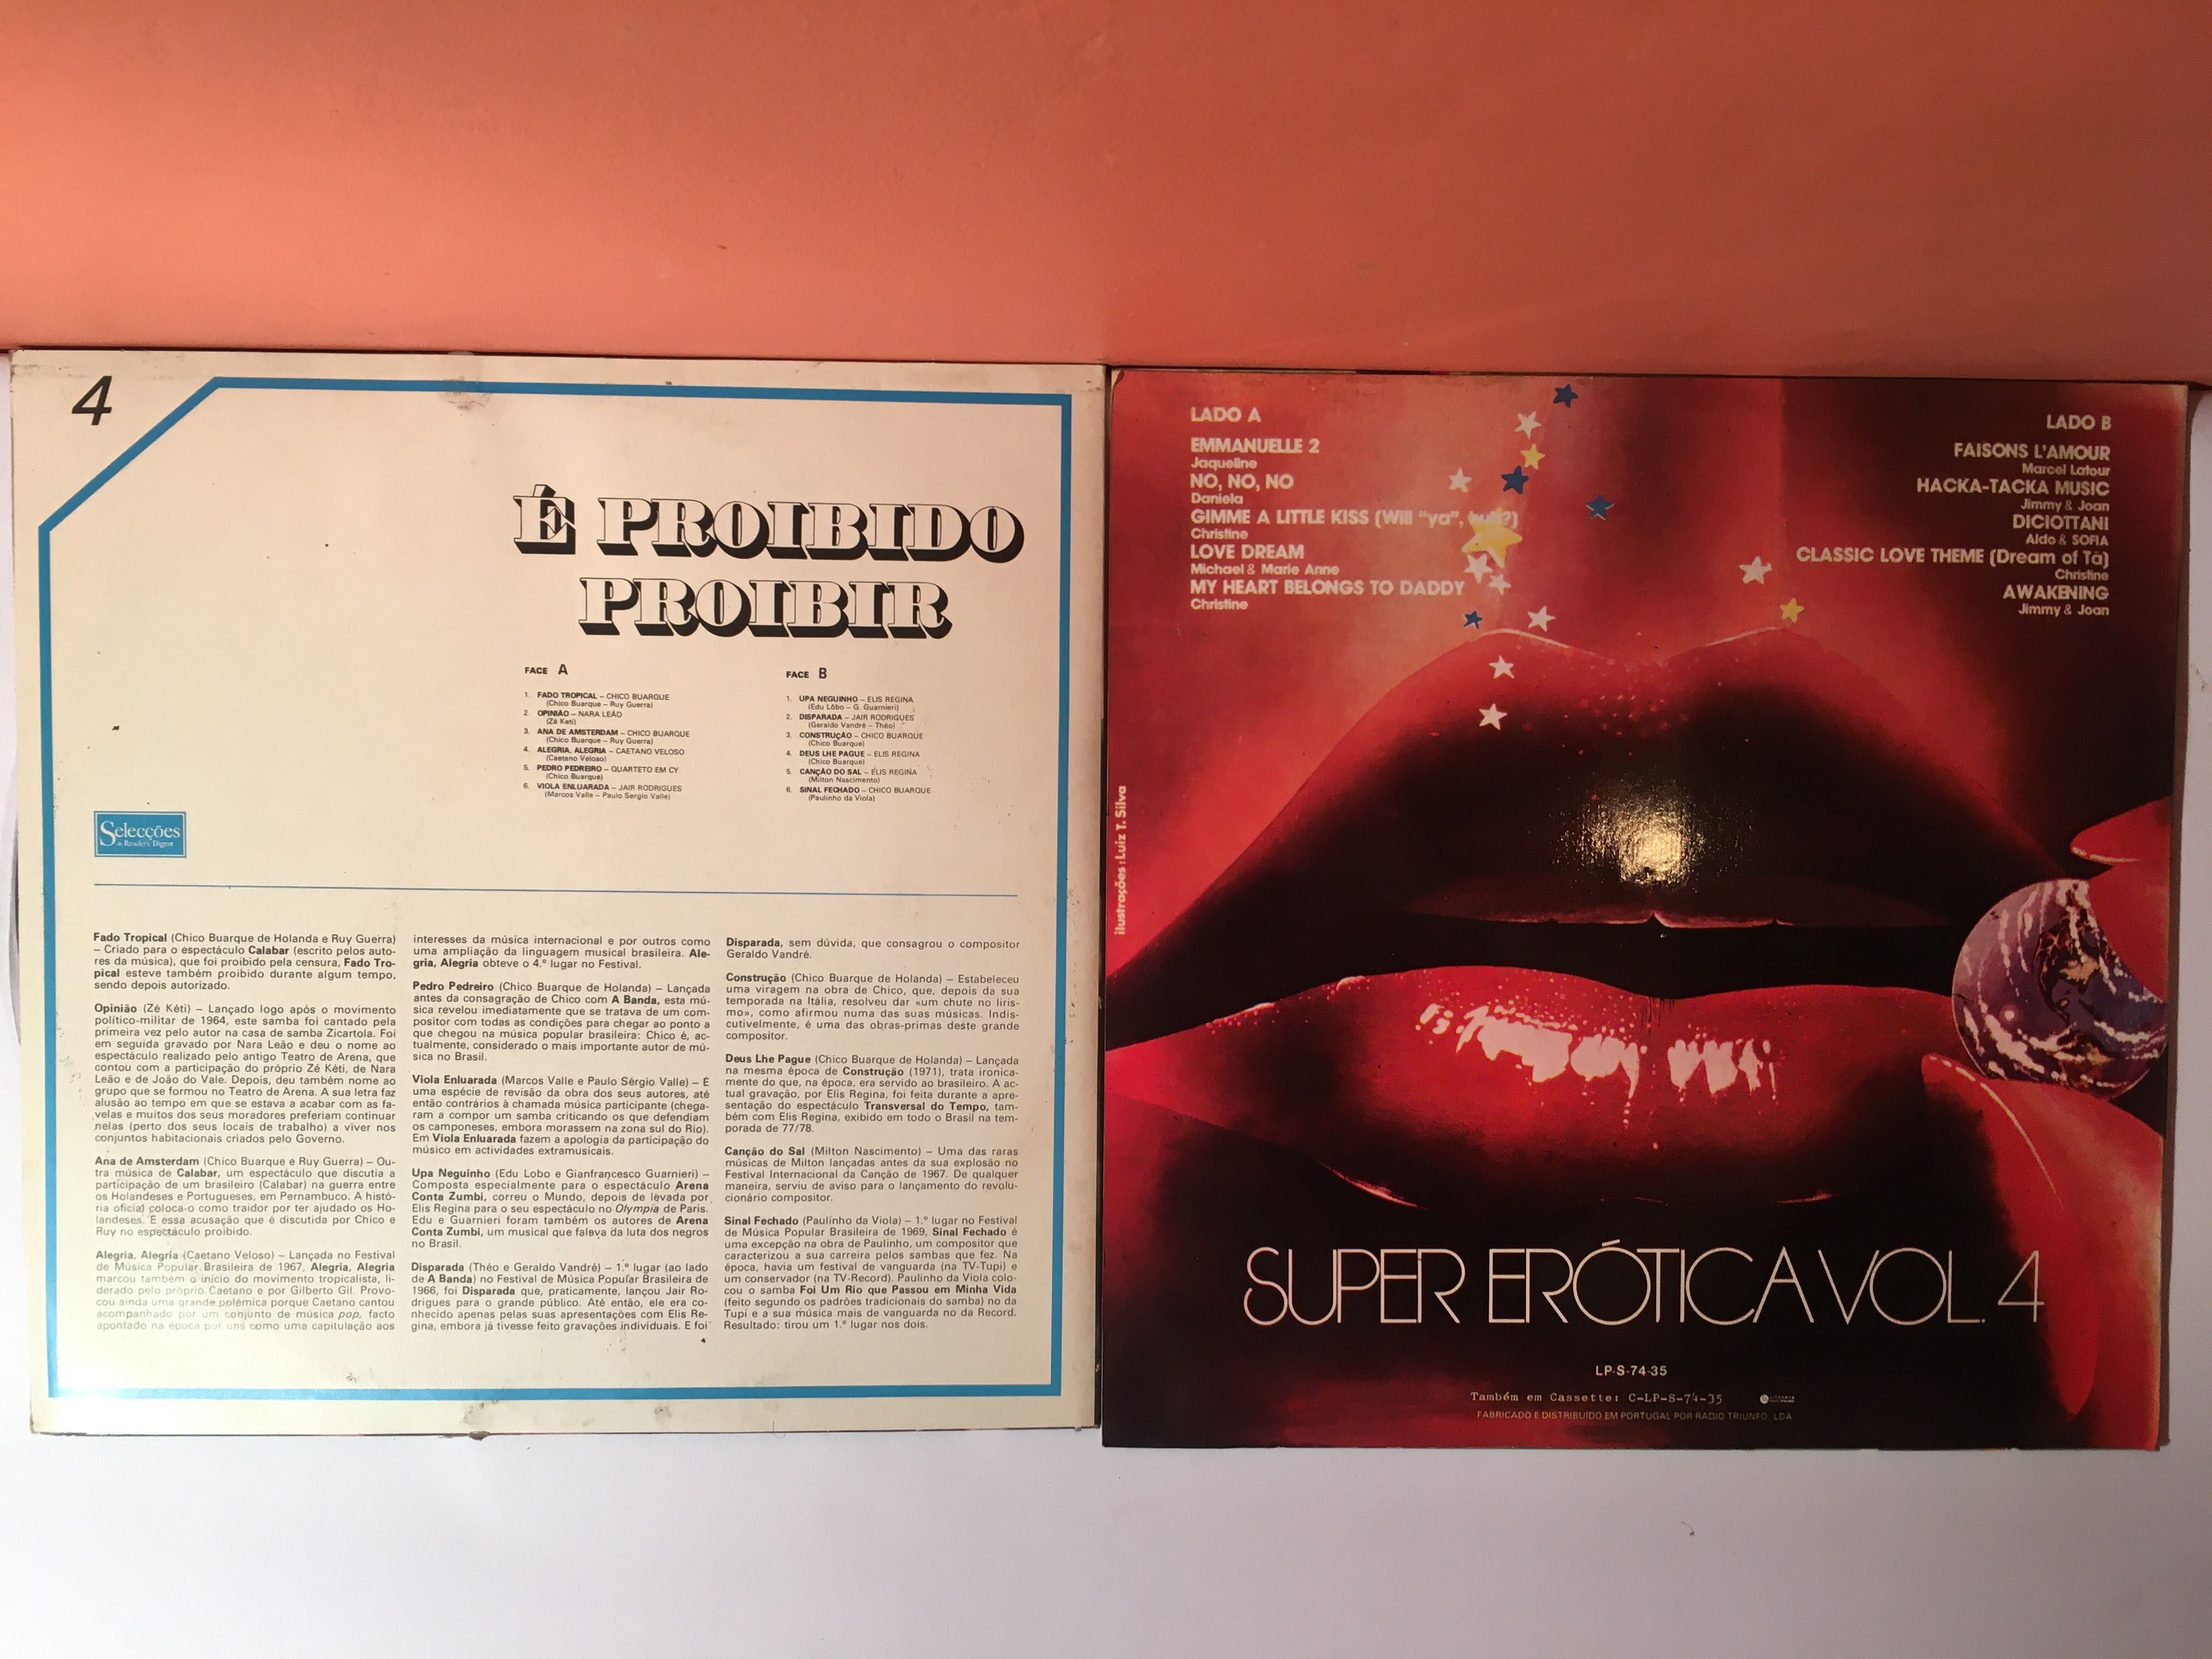 MÚSICA ERÓTICA - 5 LP  - anos 70